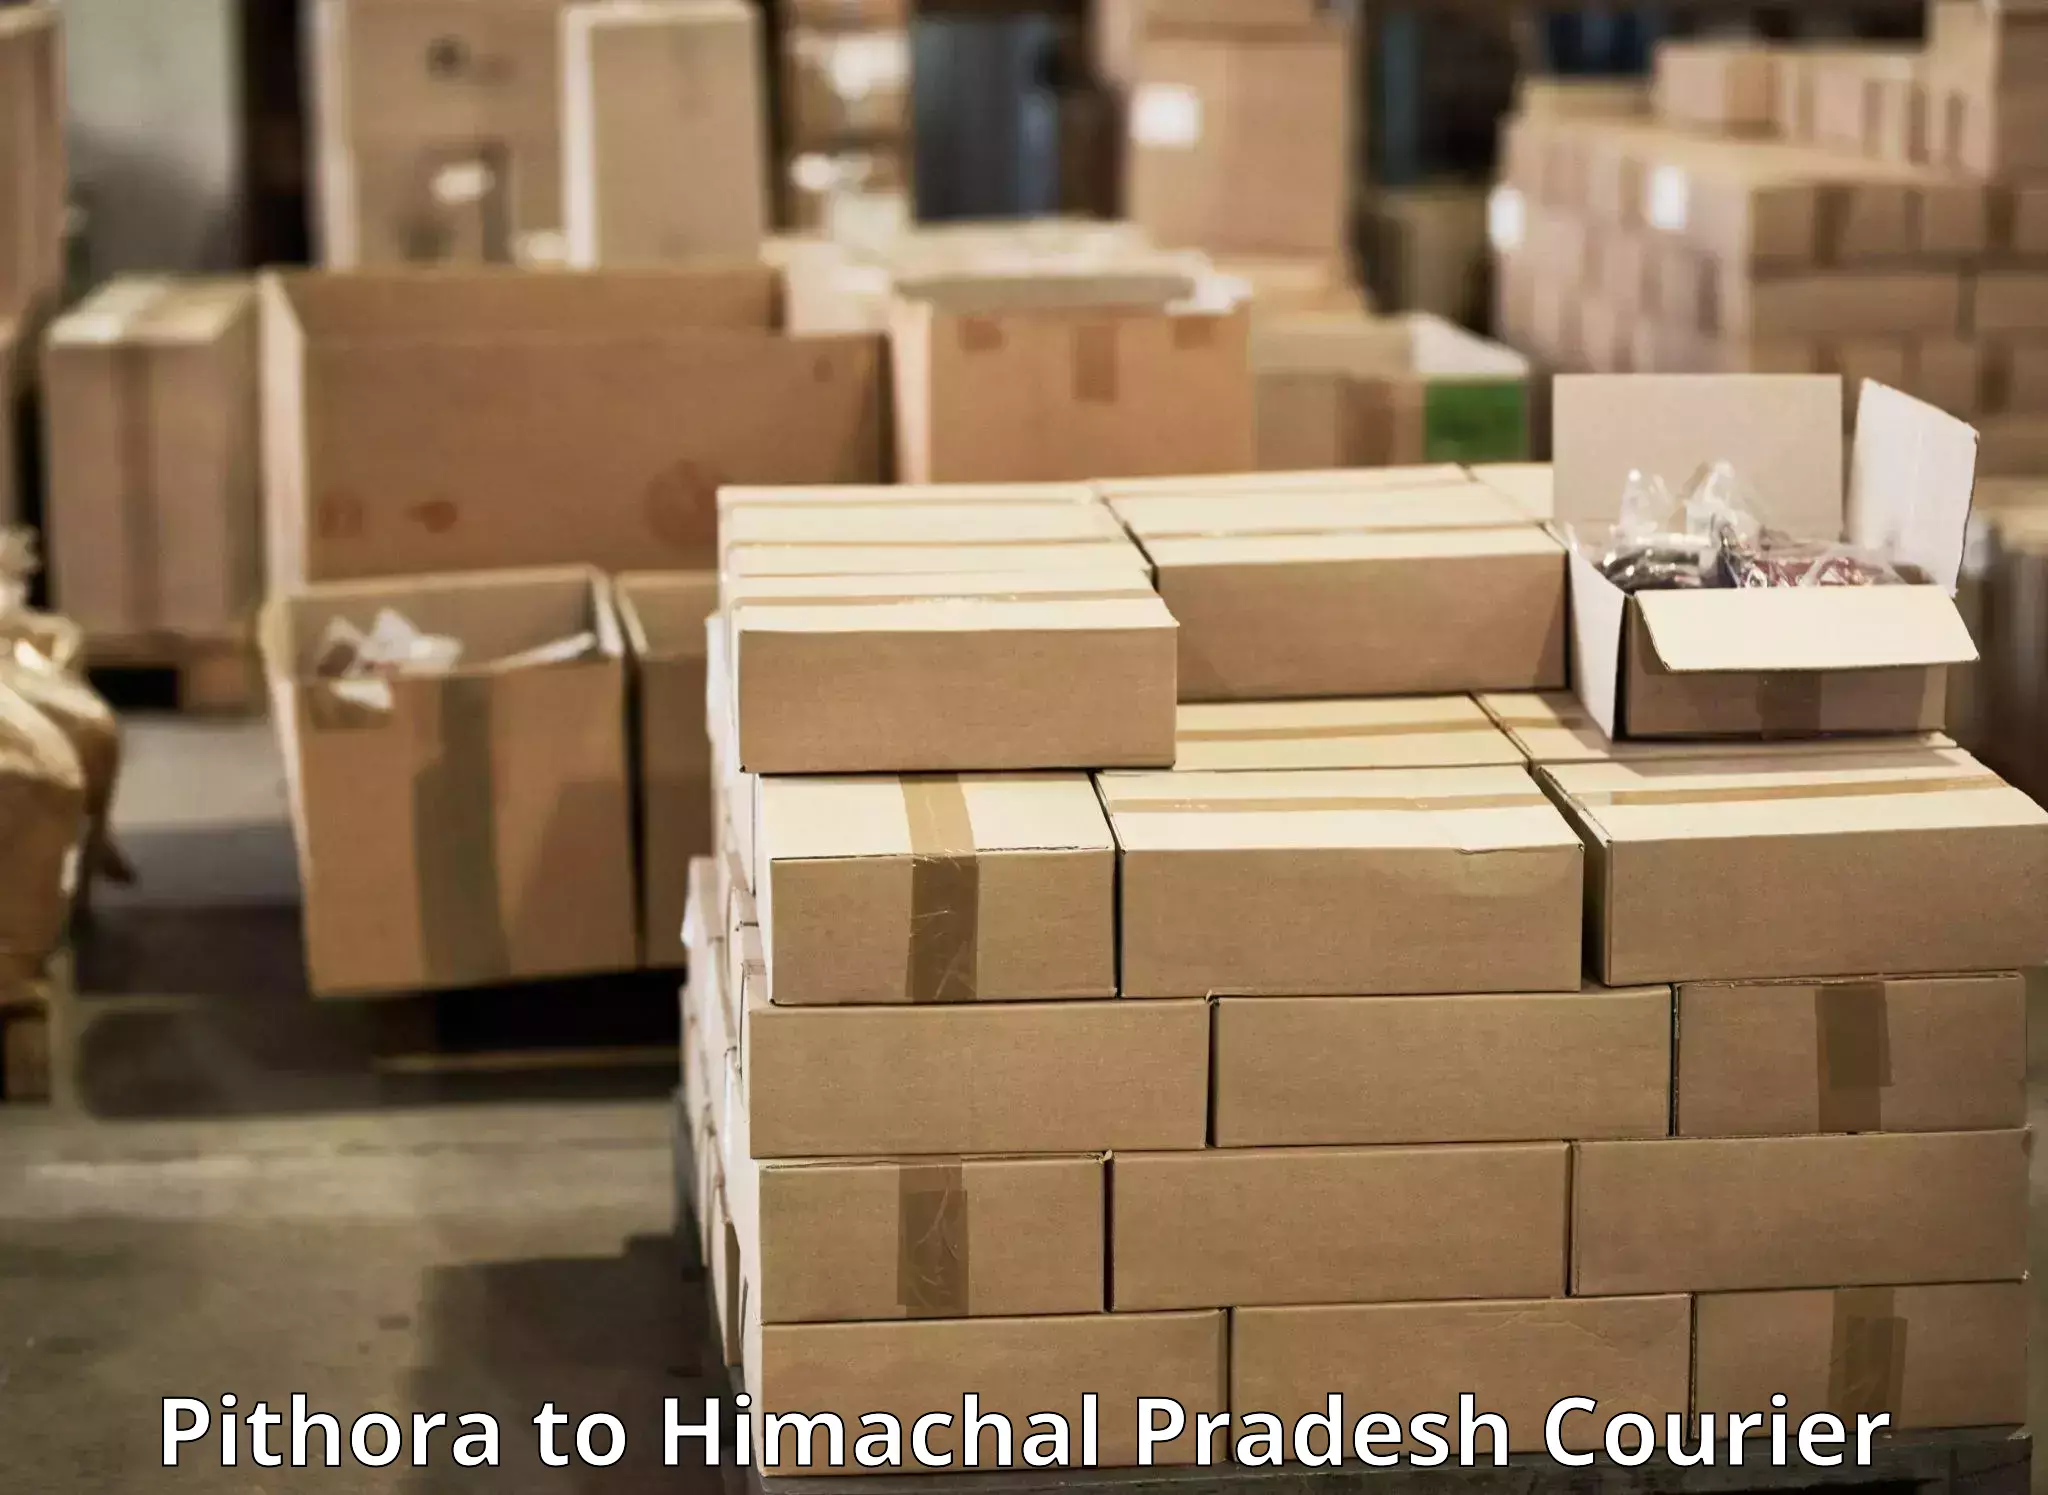 Efficient cargo handling Pithora to Himachal Pradesh